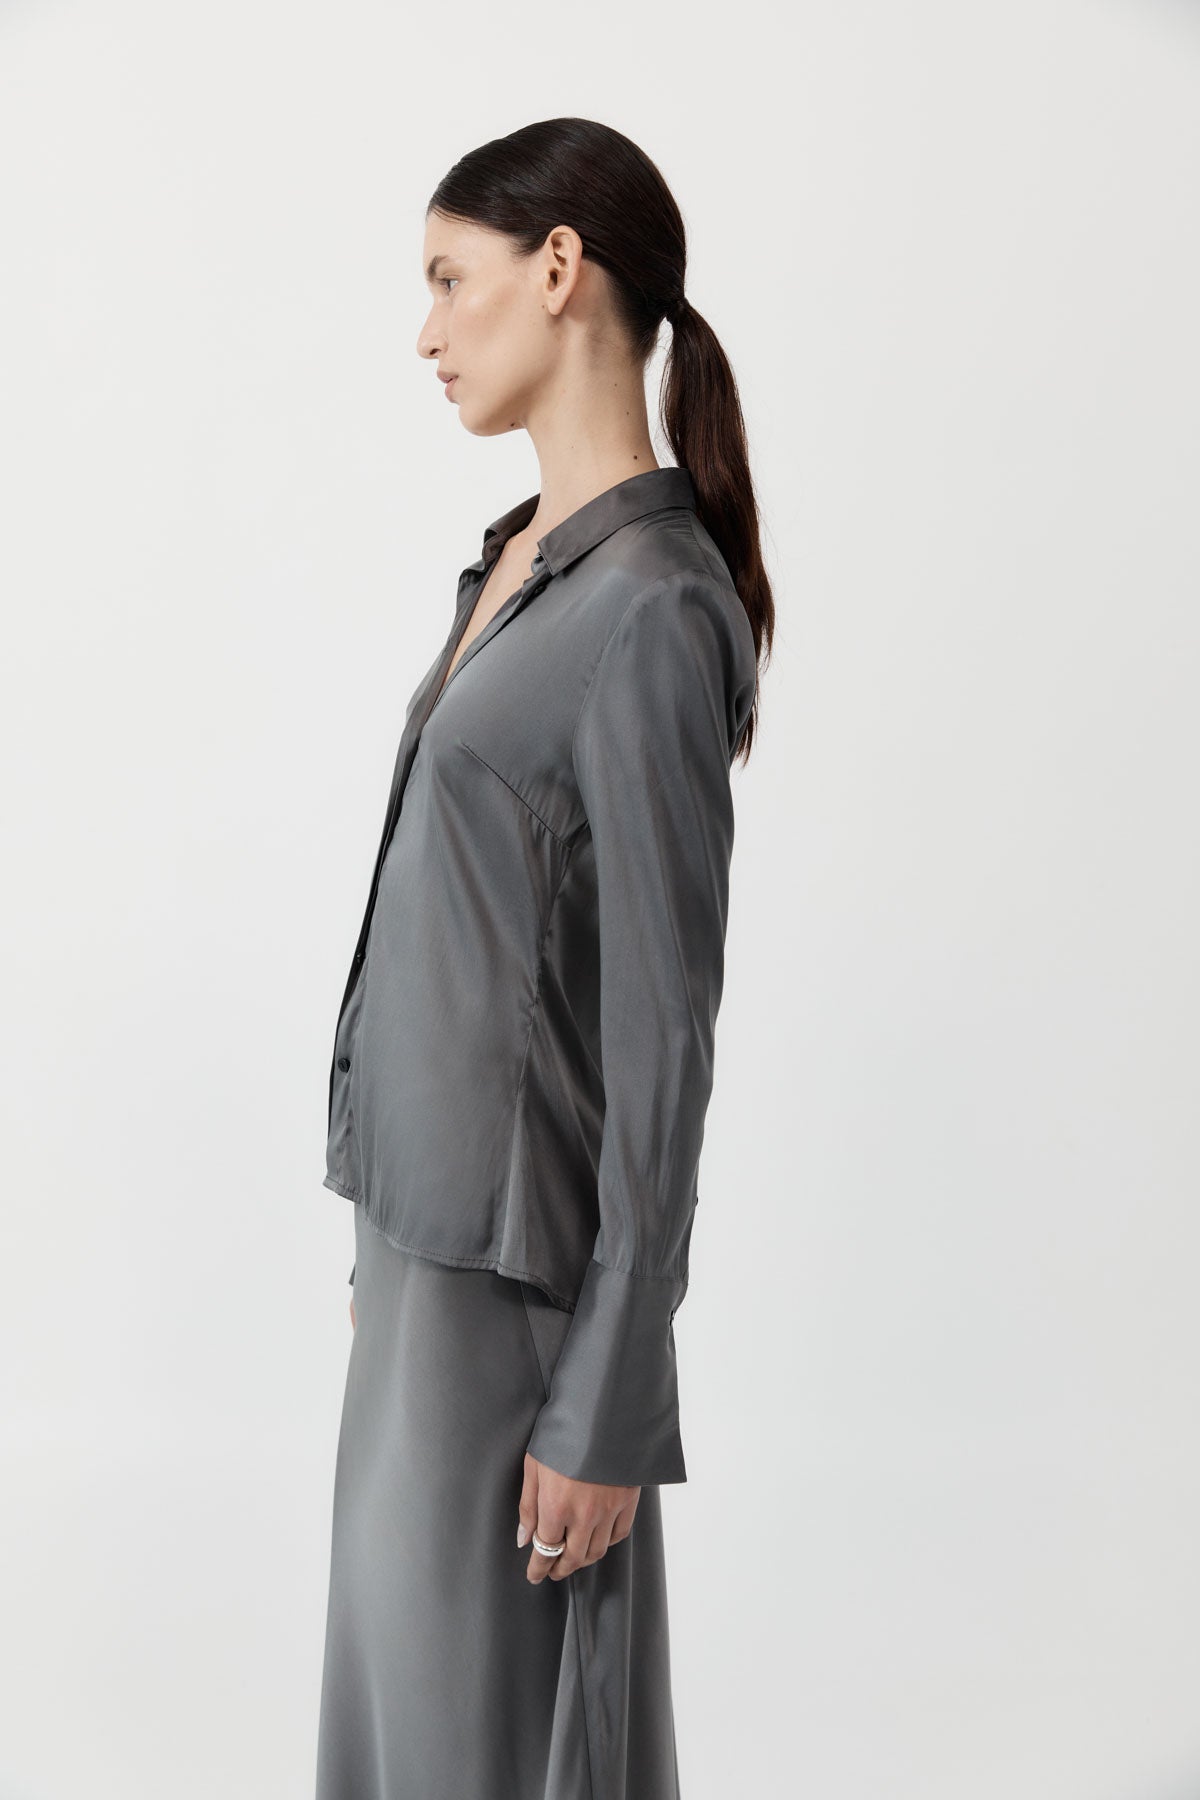 Soft Silk Shirt - Pewter Grey